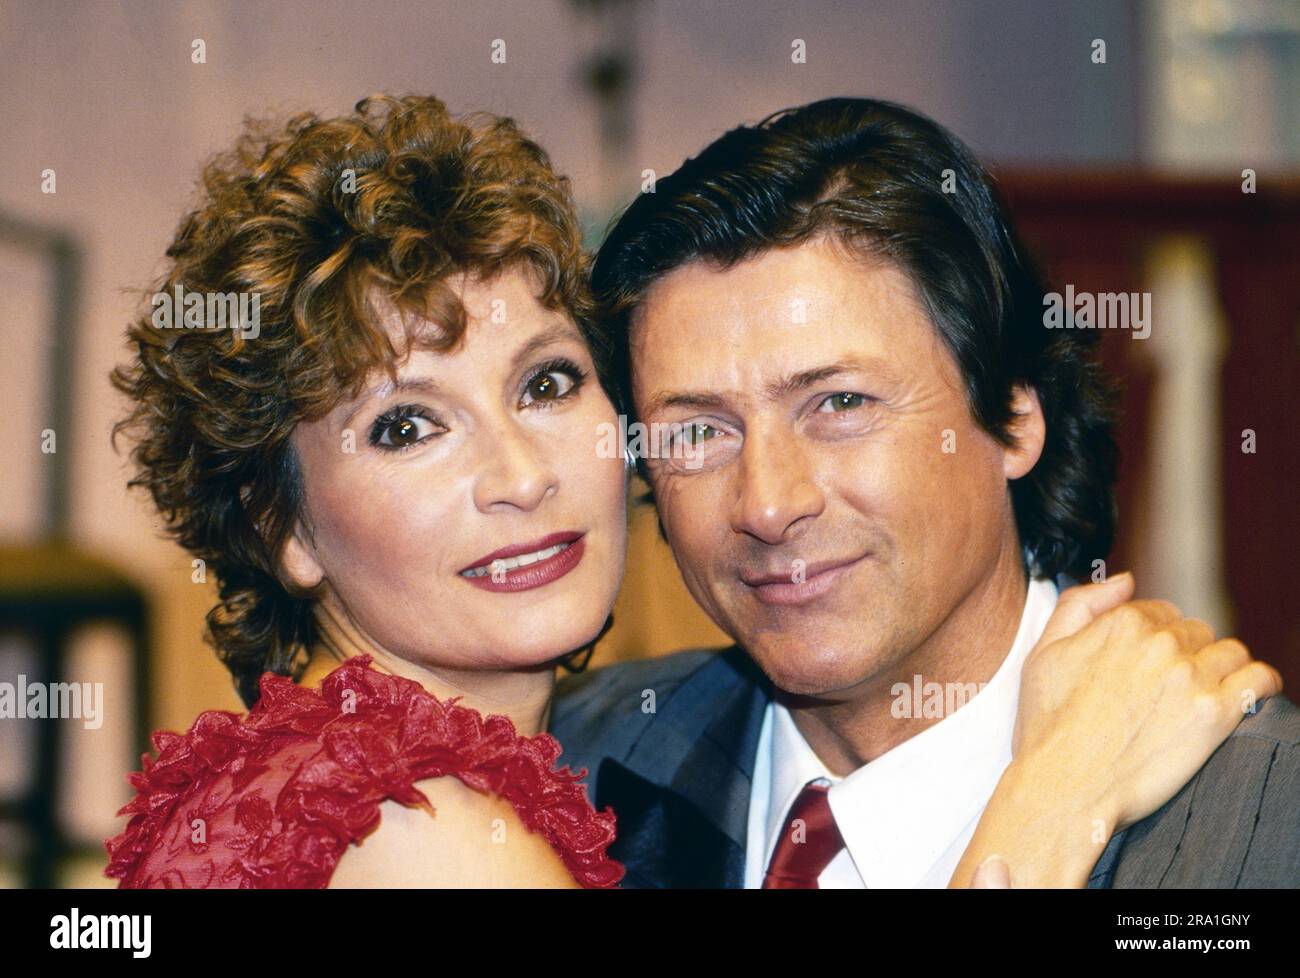 Susanne Uhlen mit Partner Herbert Herrmann in einem Theaterstück, Deutschland um 1990. Stockfoto